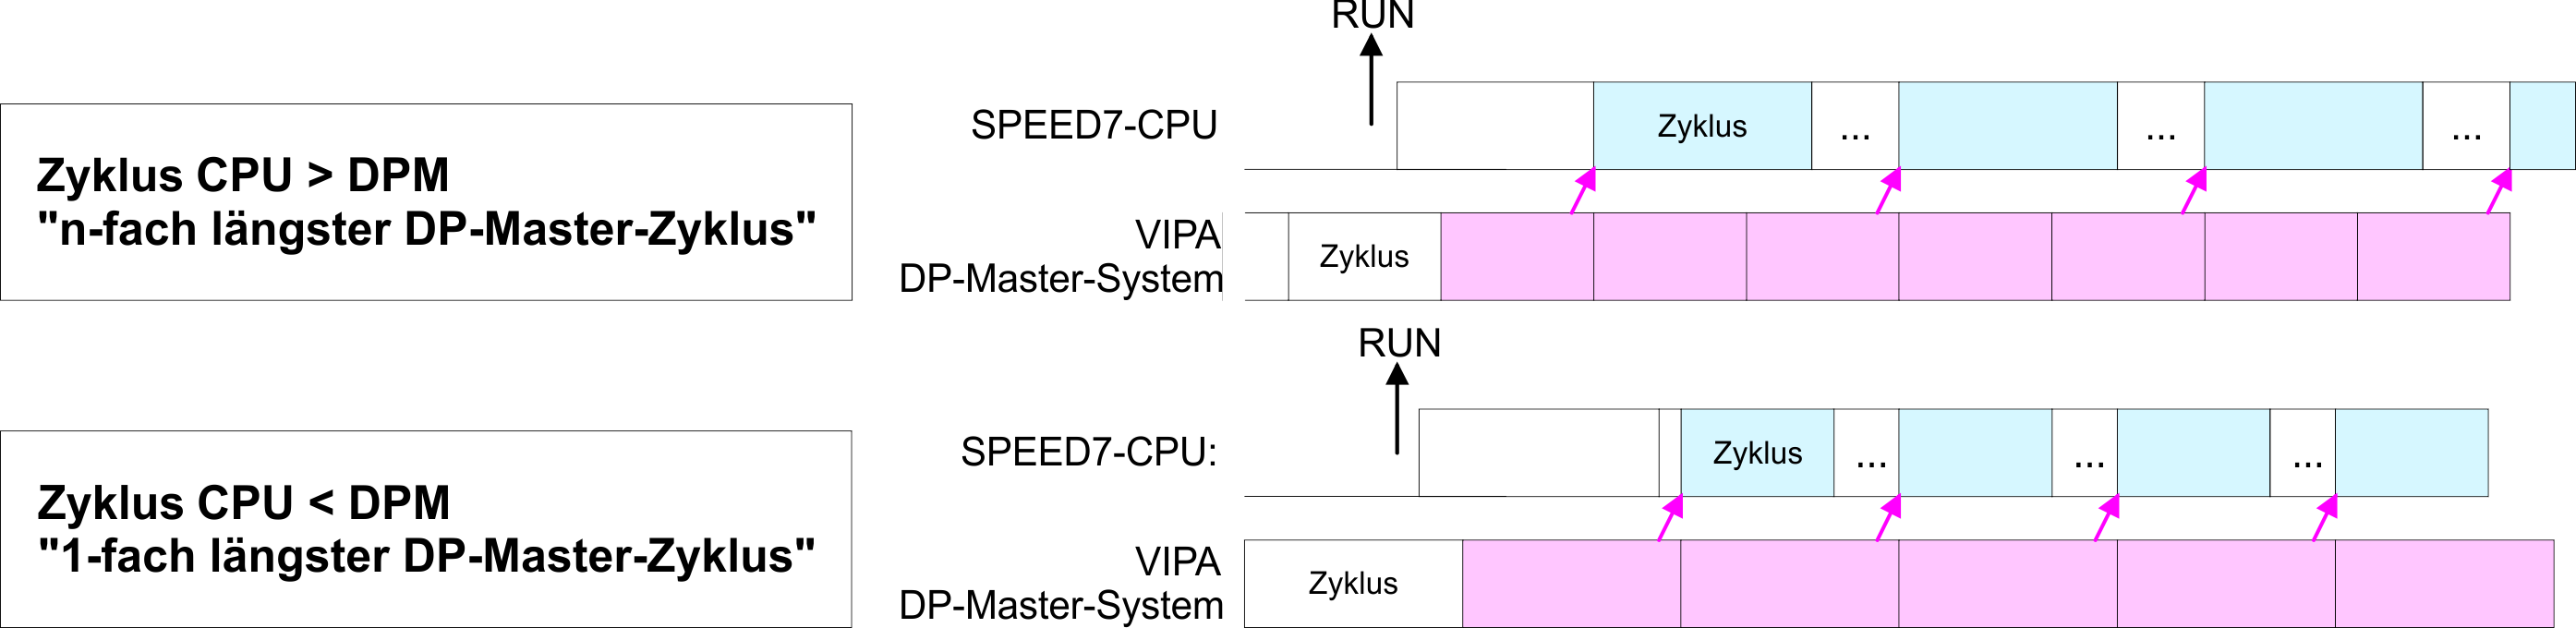 Einsatz CPU 315-4EC12 VIPA System 300S CPU 315SN/EC Einstellung VIPA-spezifische CPU-Parameter > VIPA-spezifische Parameter PROFIBUS-DP SyncIn In der Betriebsart PROFIBUS-DP SyncIn wird der